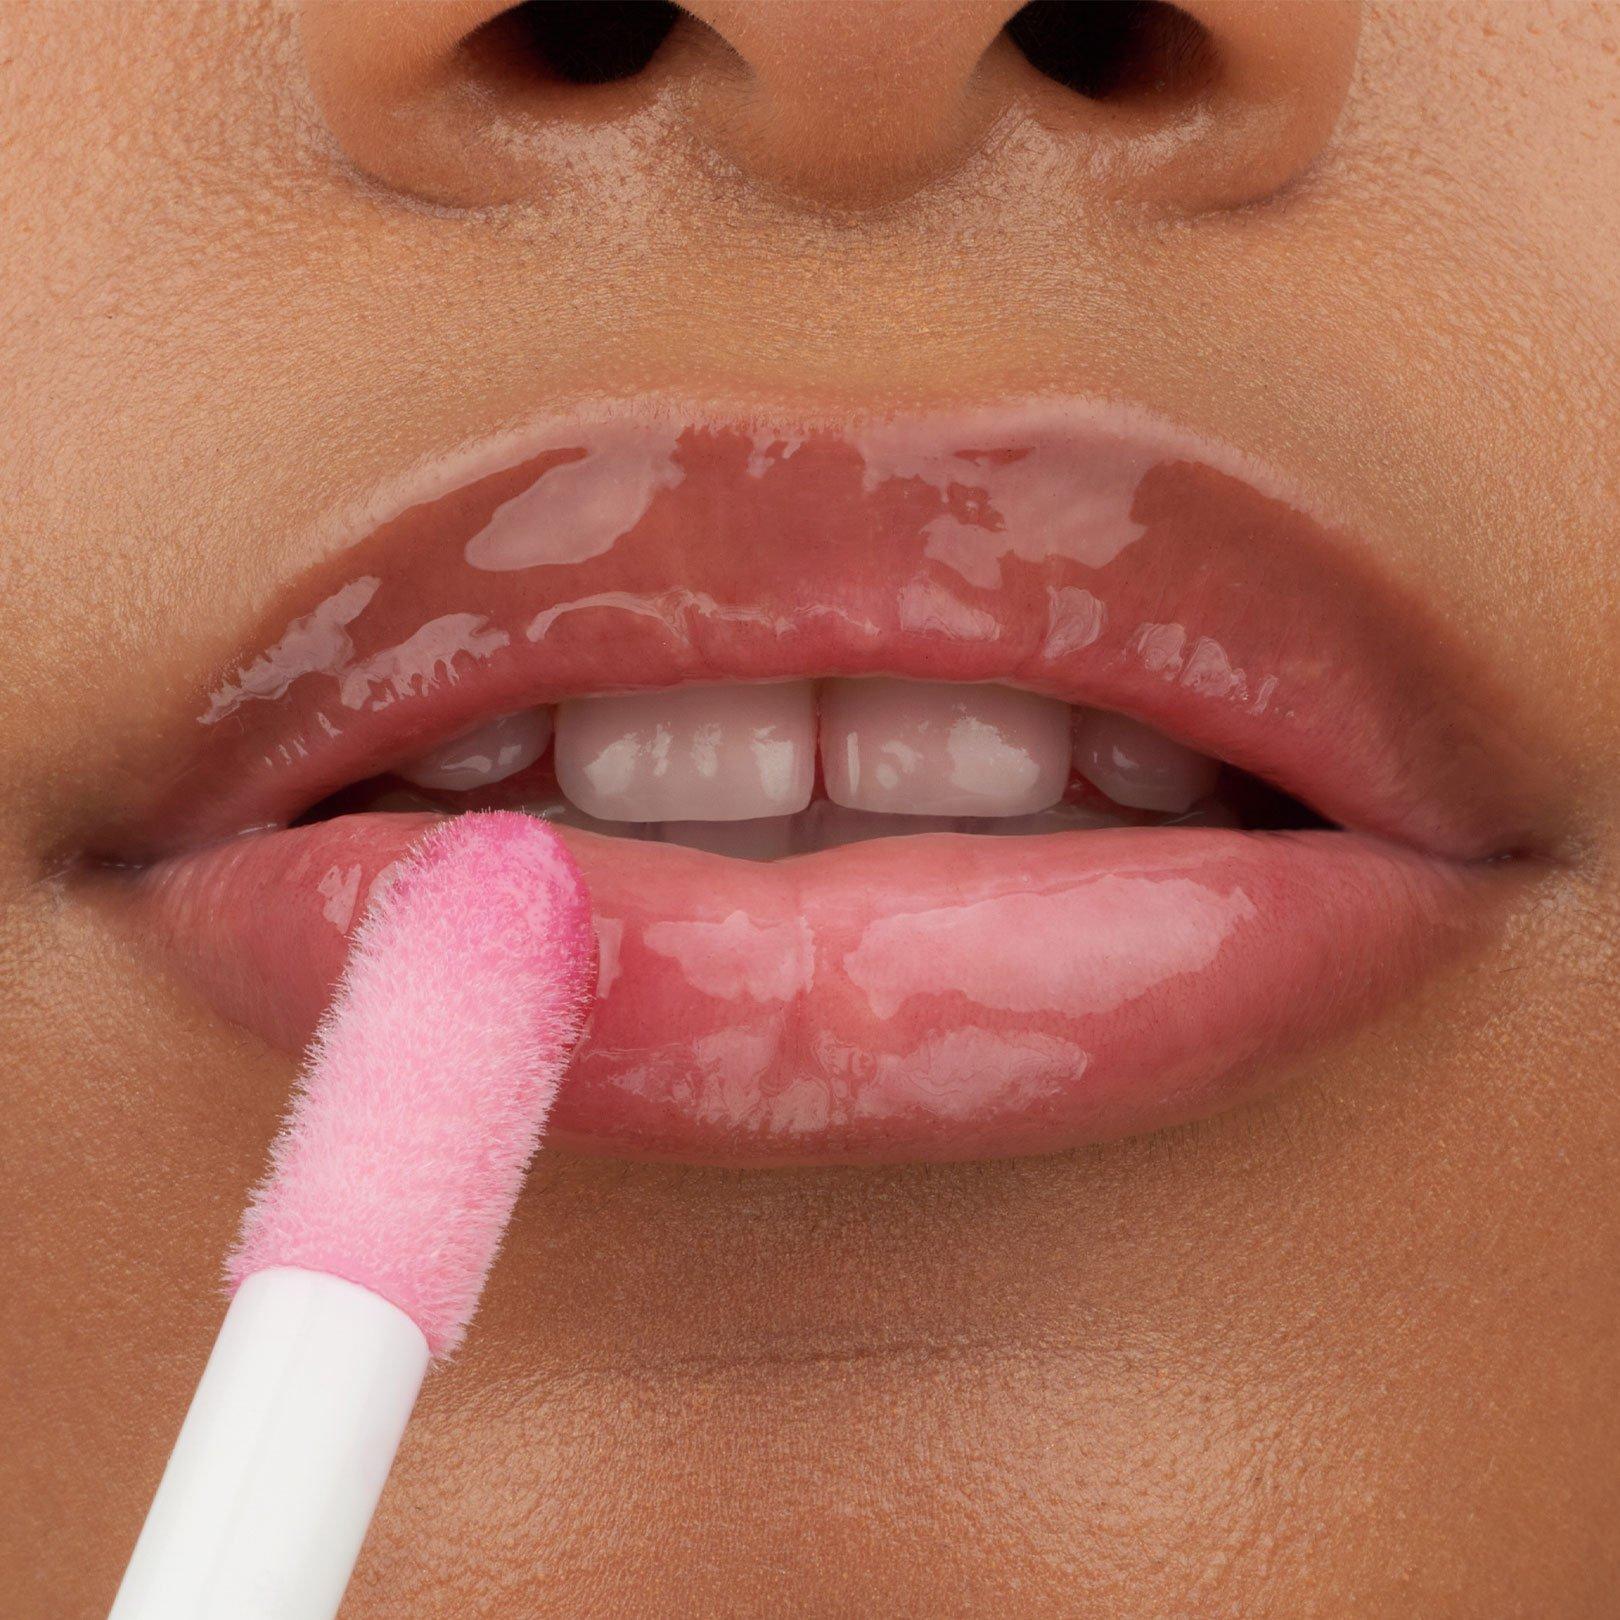 Vollere Lippen schminken – so gehst du vor! ❤ Erfahre mehr auf